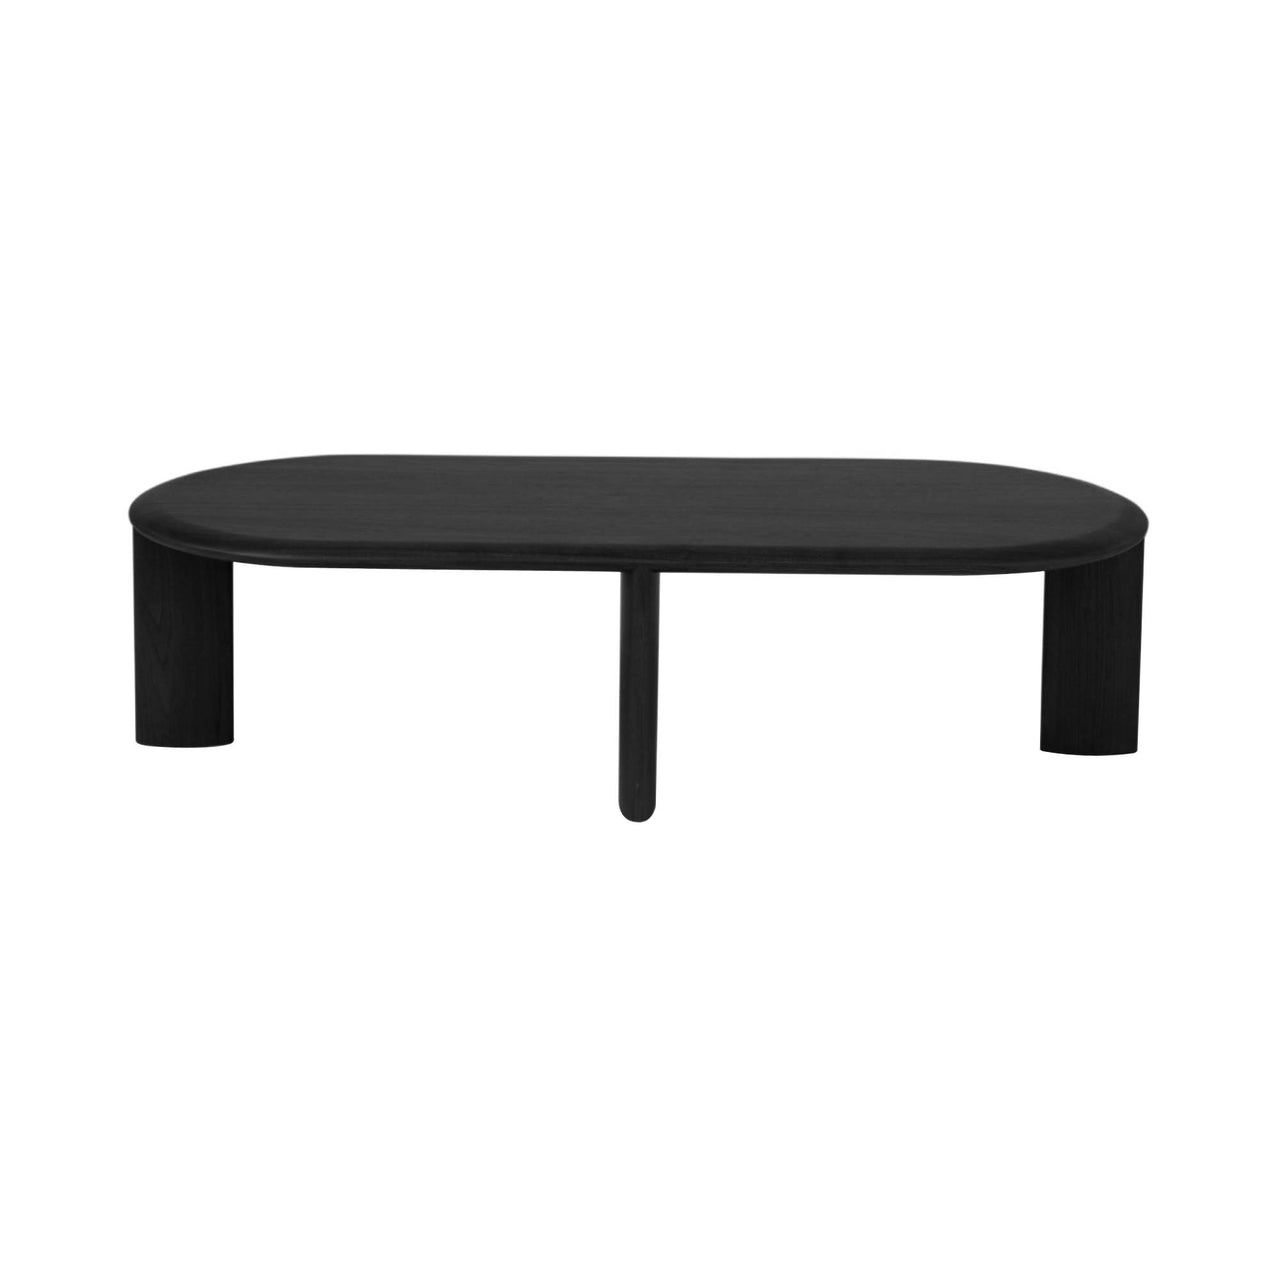 IO Coffee Table: Long + Black